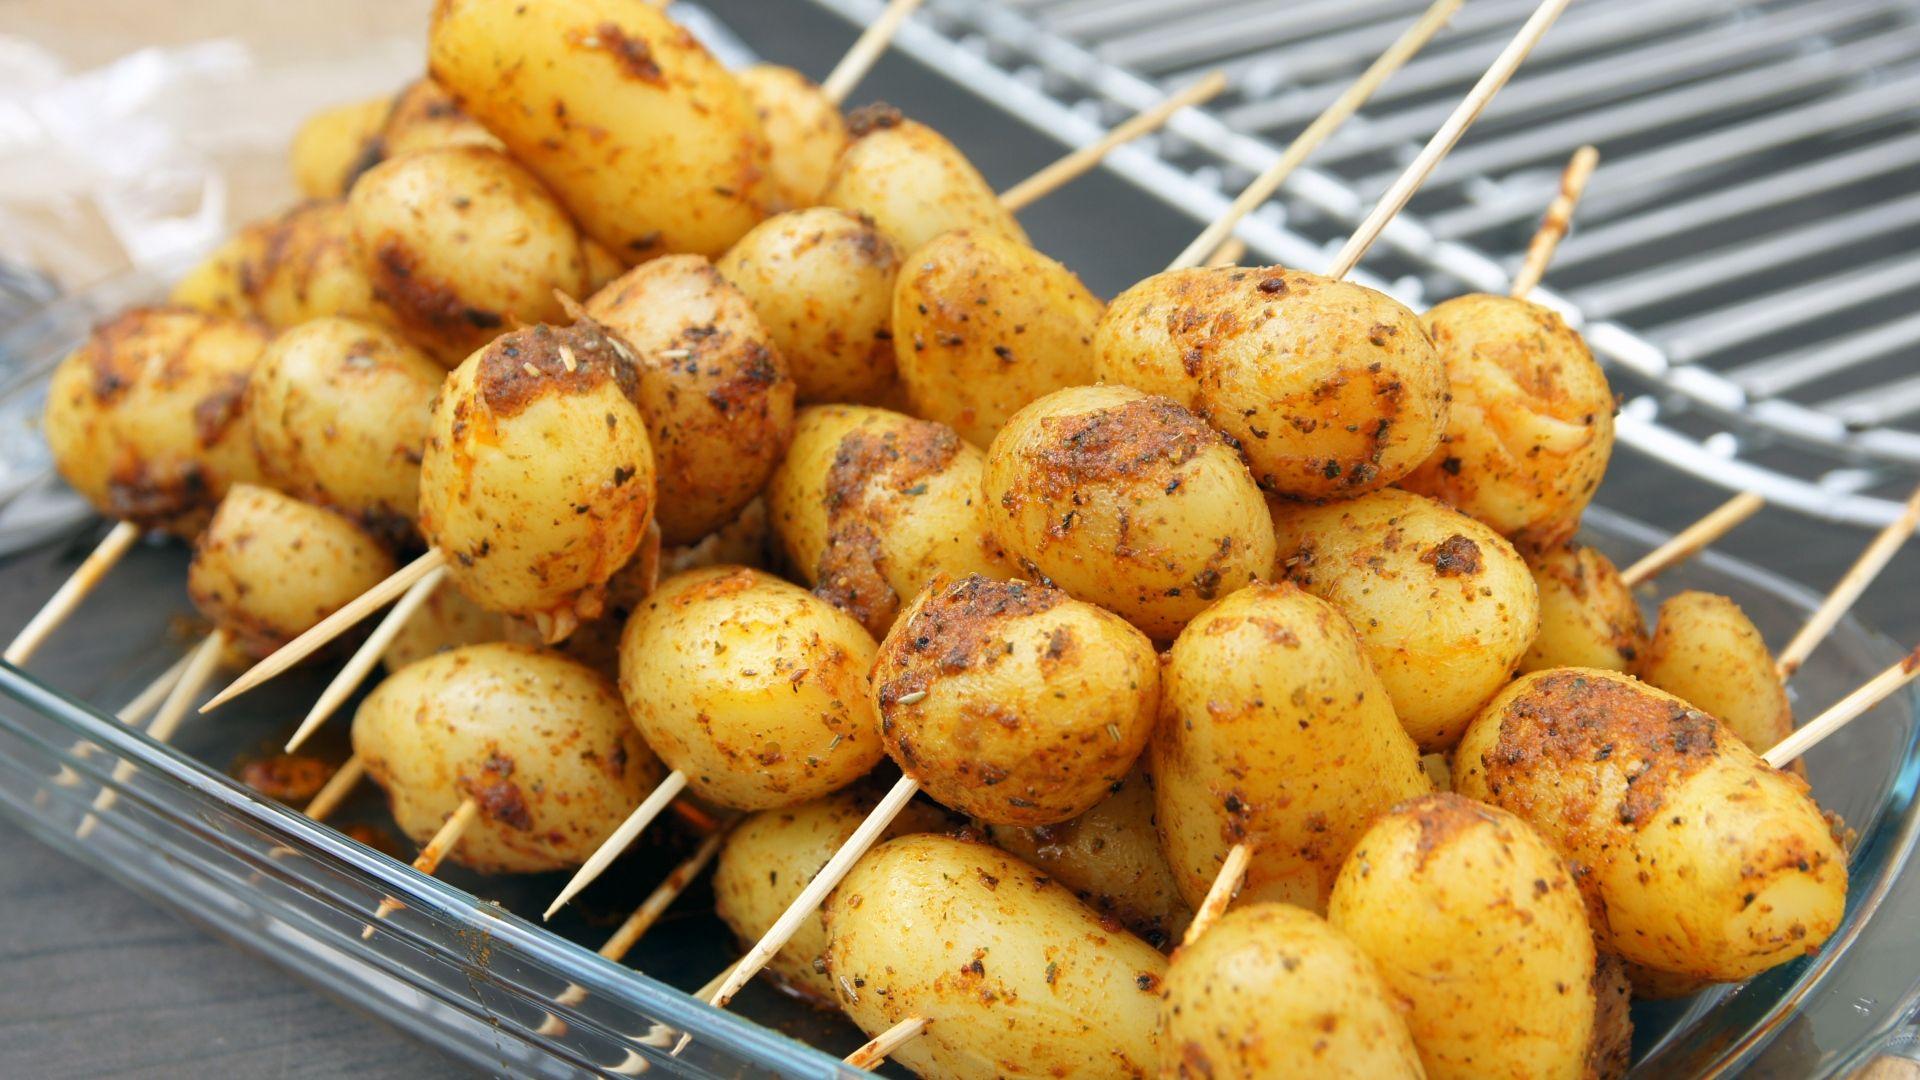 Картошка с салом на мангале